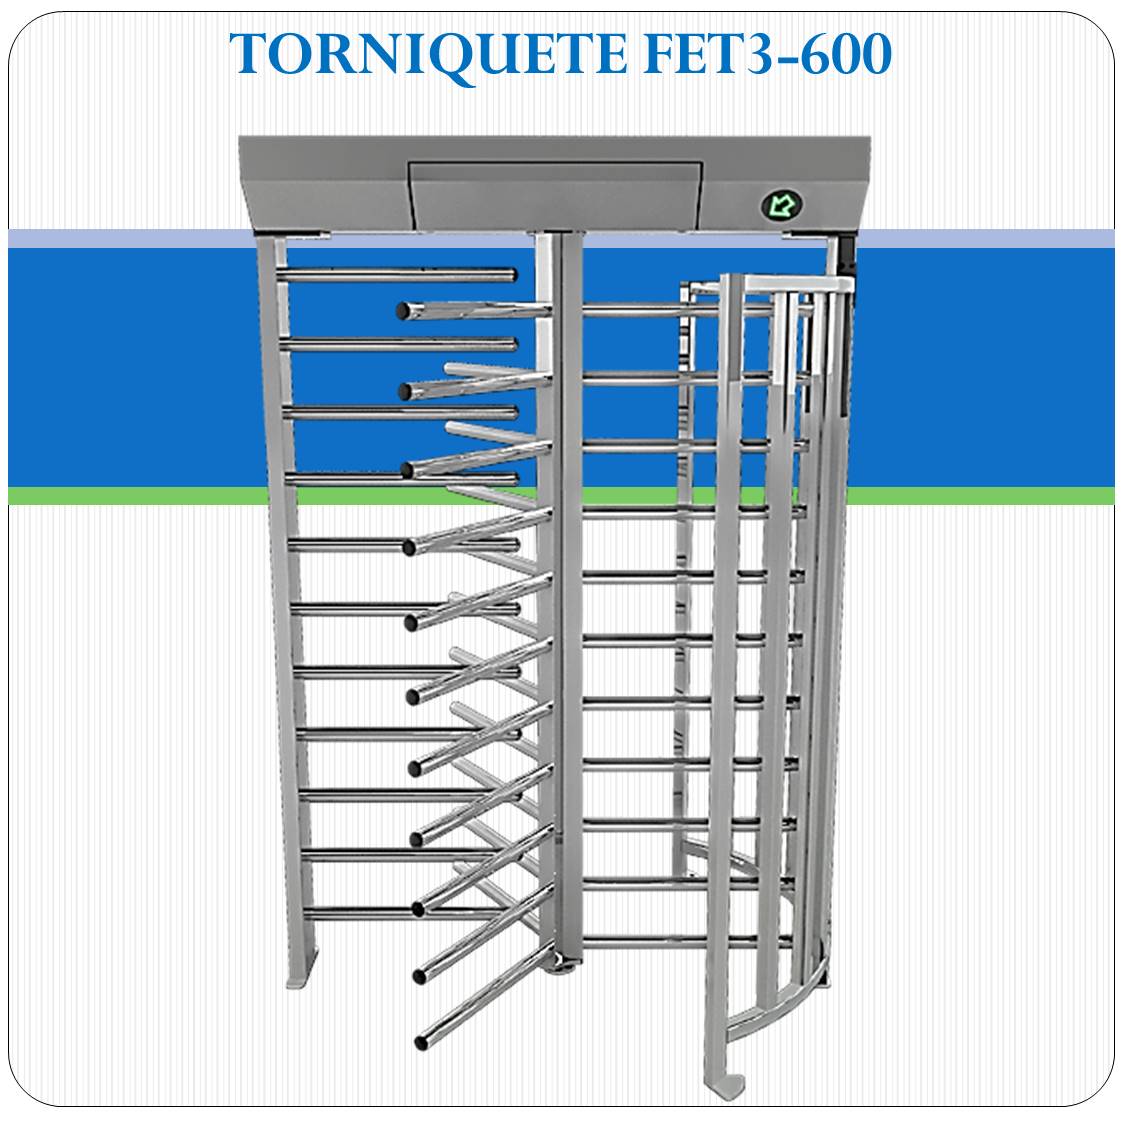 Torniquete FET3-600